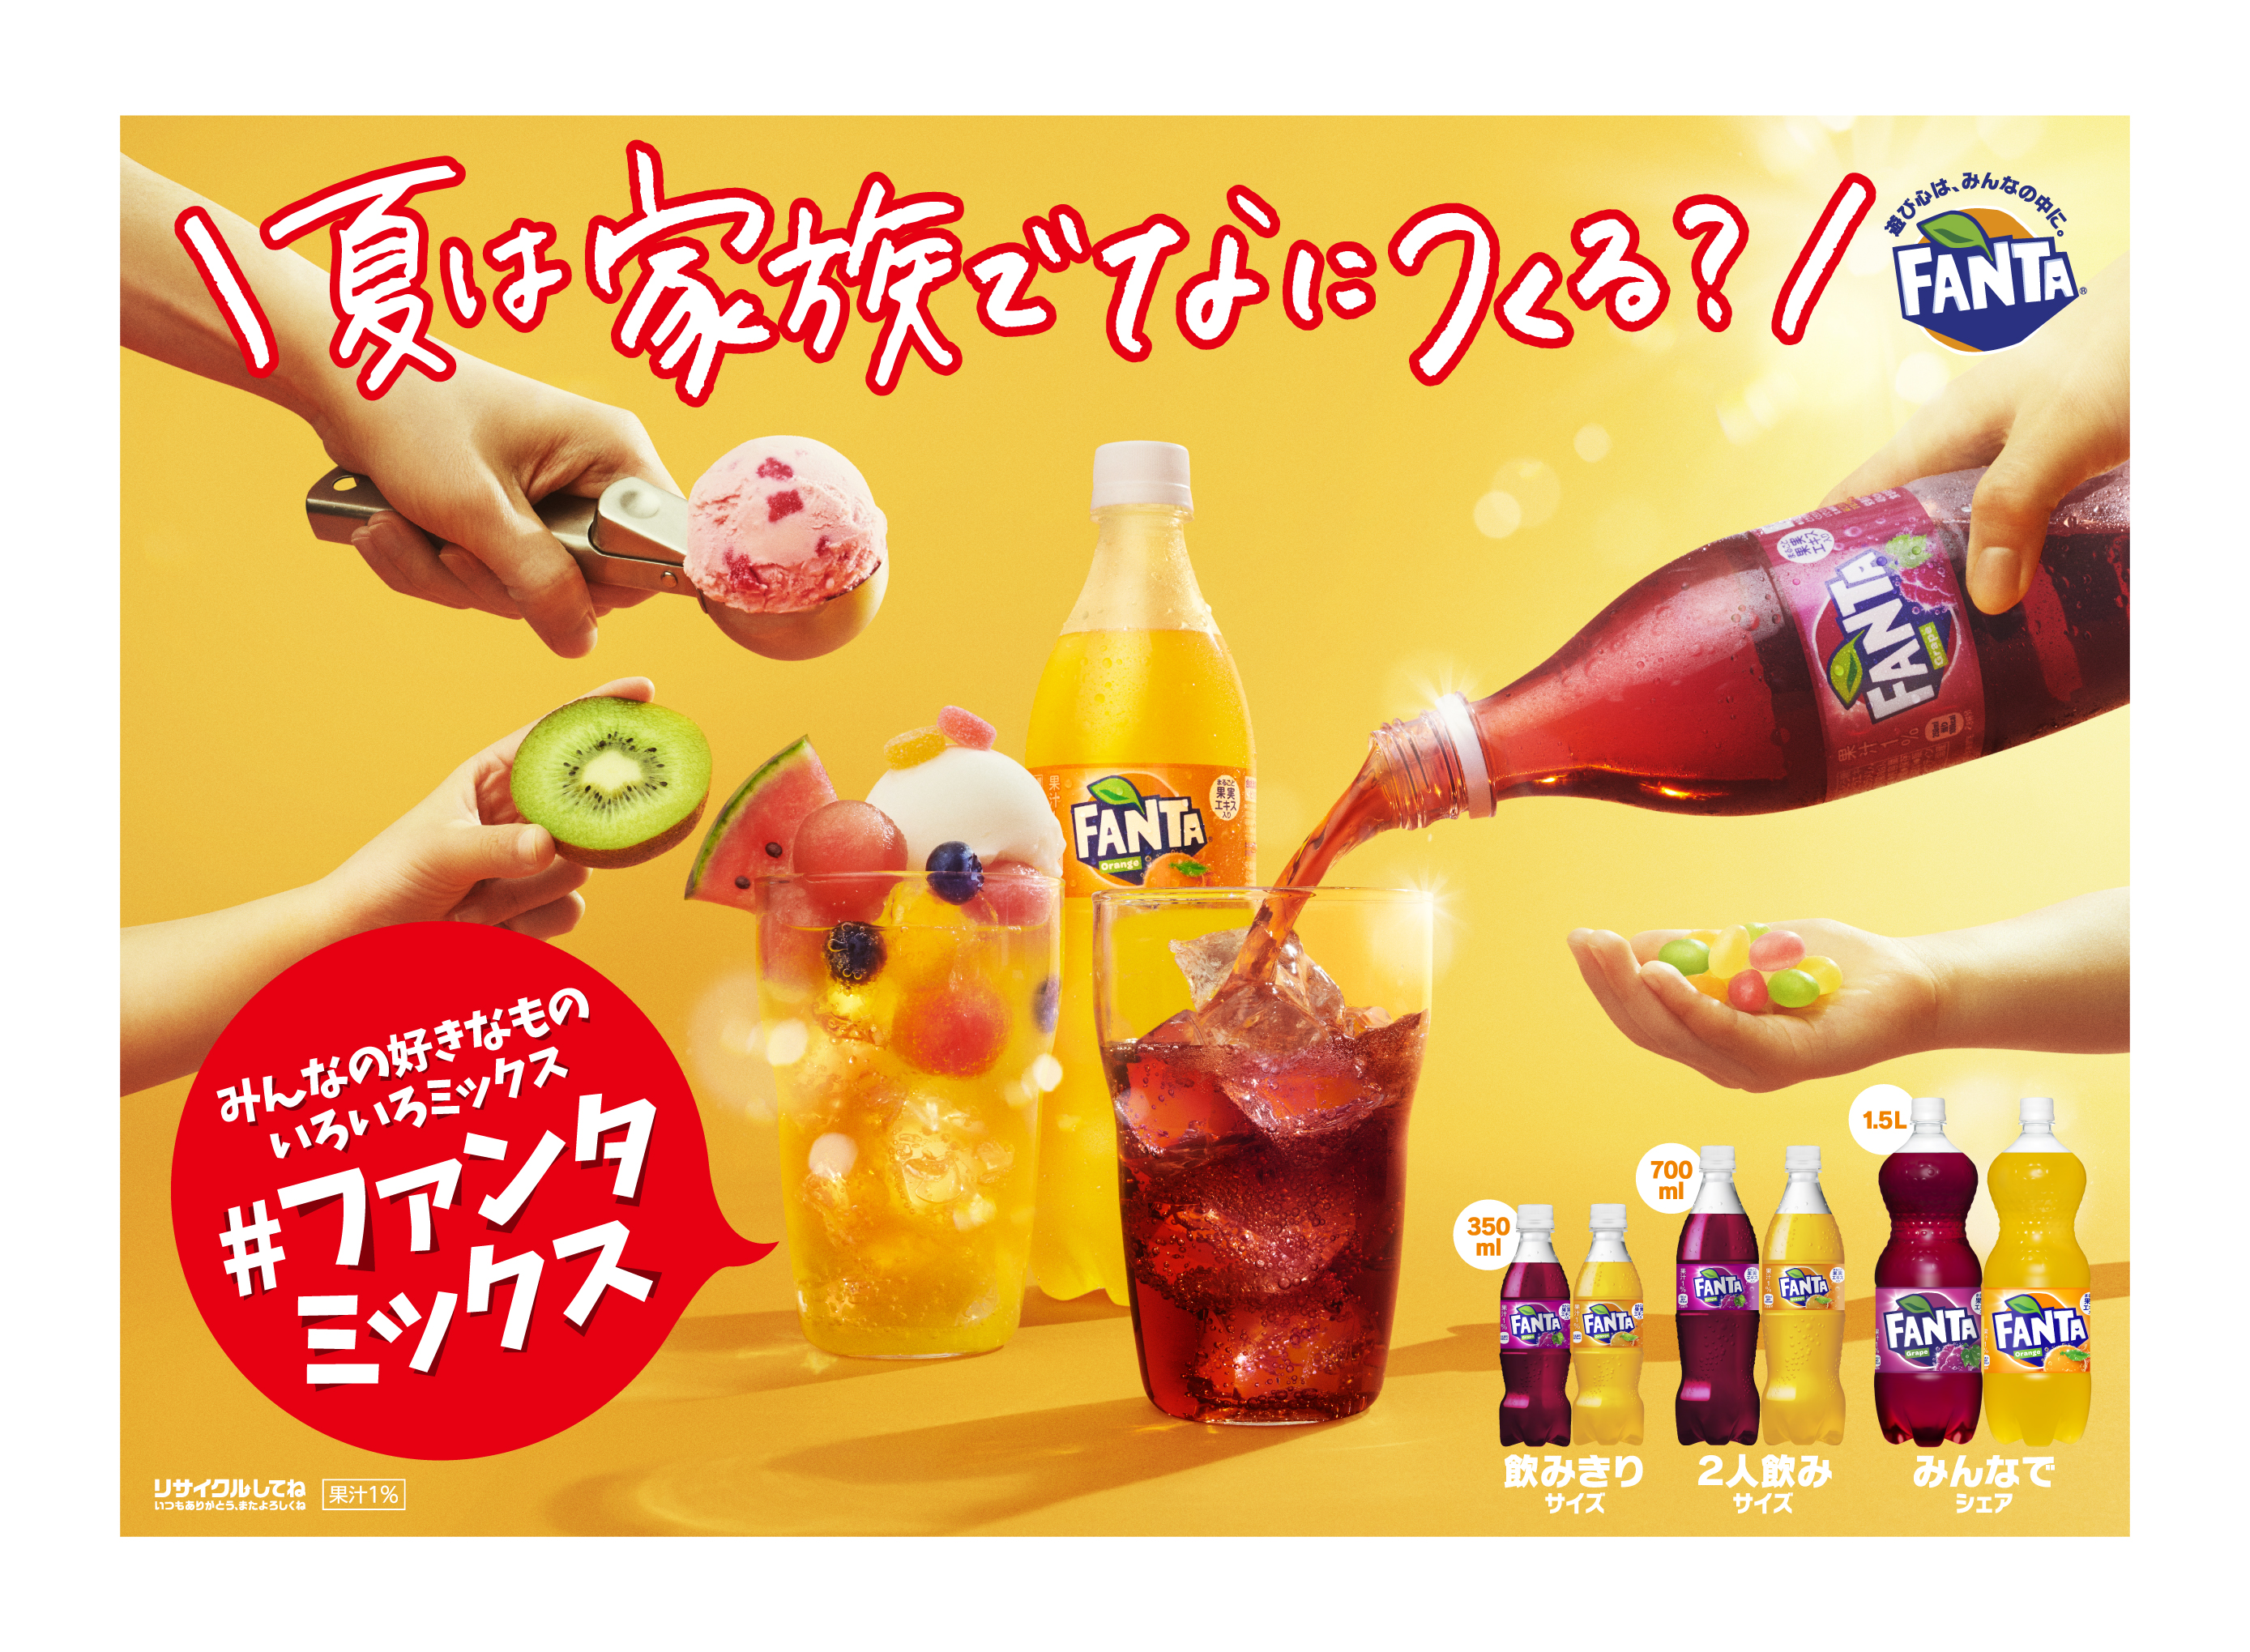 カラフルな炭酸の刺激とおいしさで みんなが笑顔に ファンタ 夏は家族でなにつくる ファンタミックス キャンペーン 日本コカ コーラ 株式会社のプレスリリース